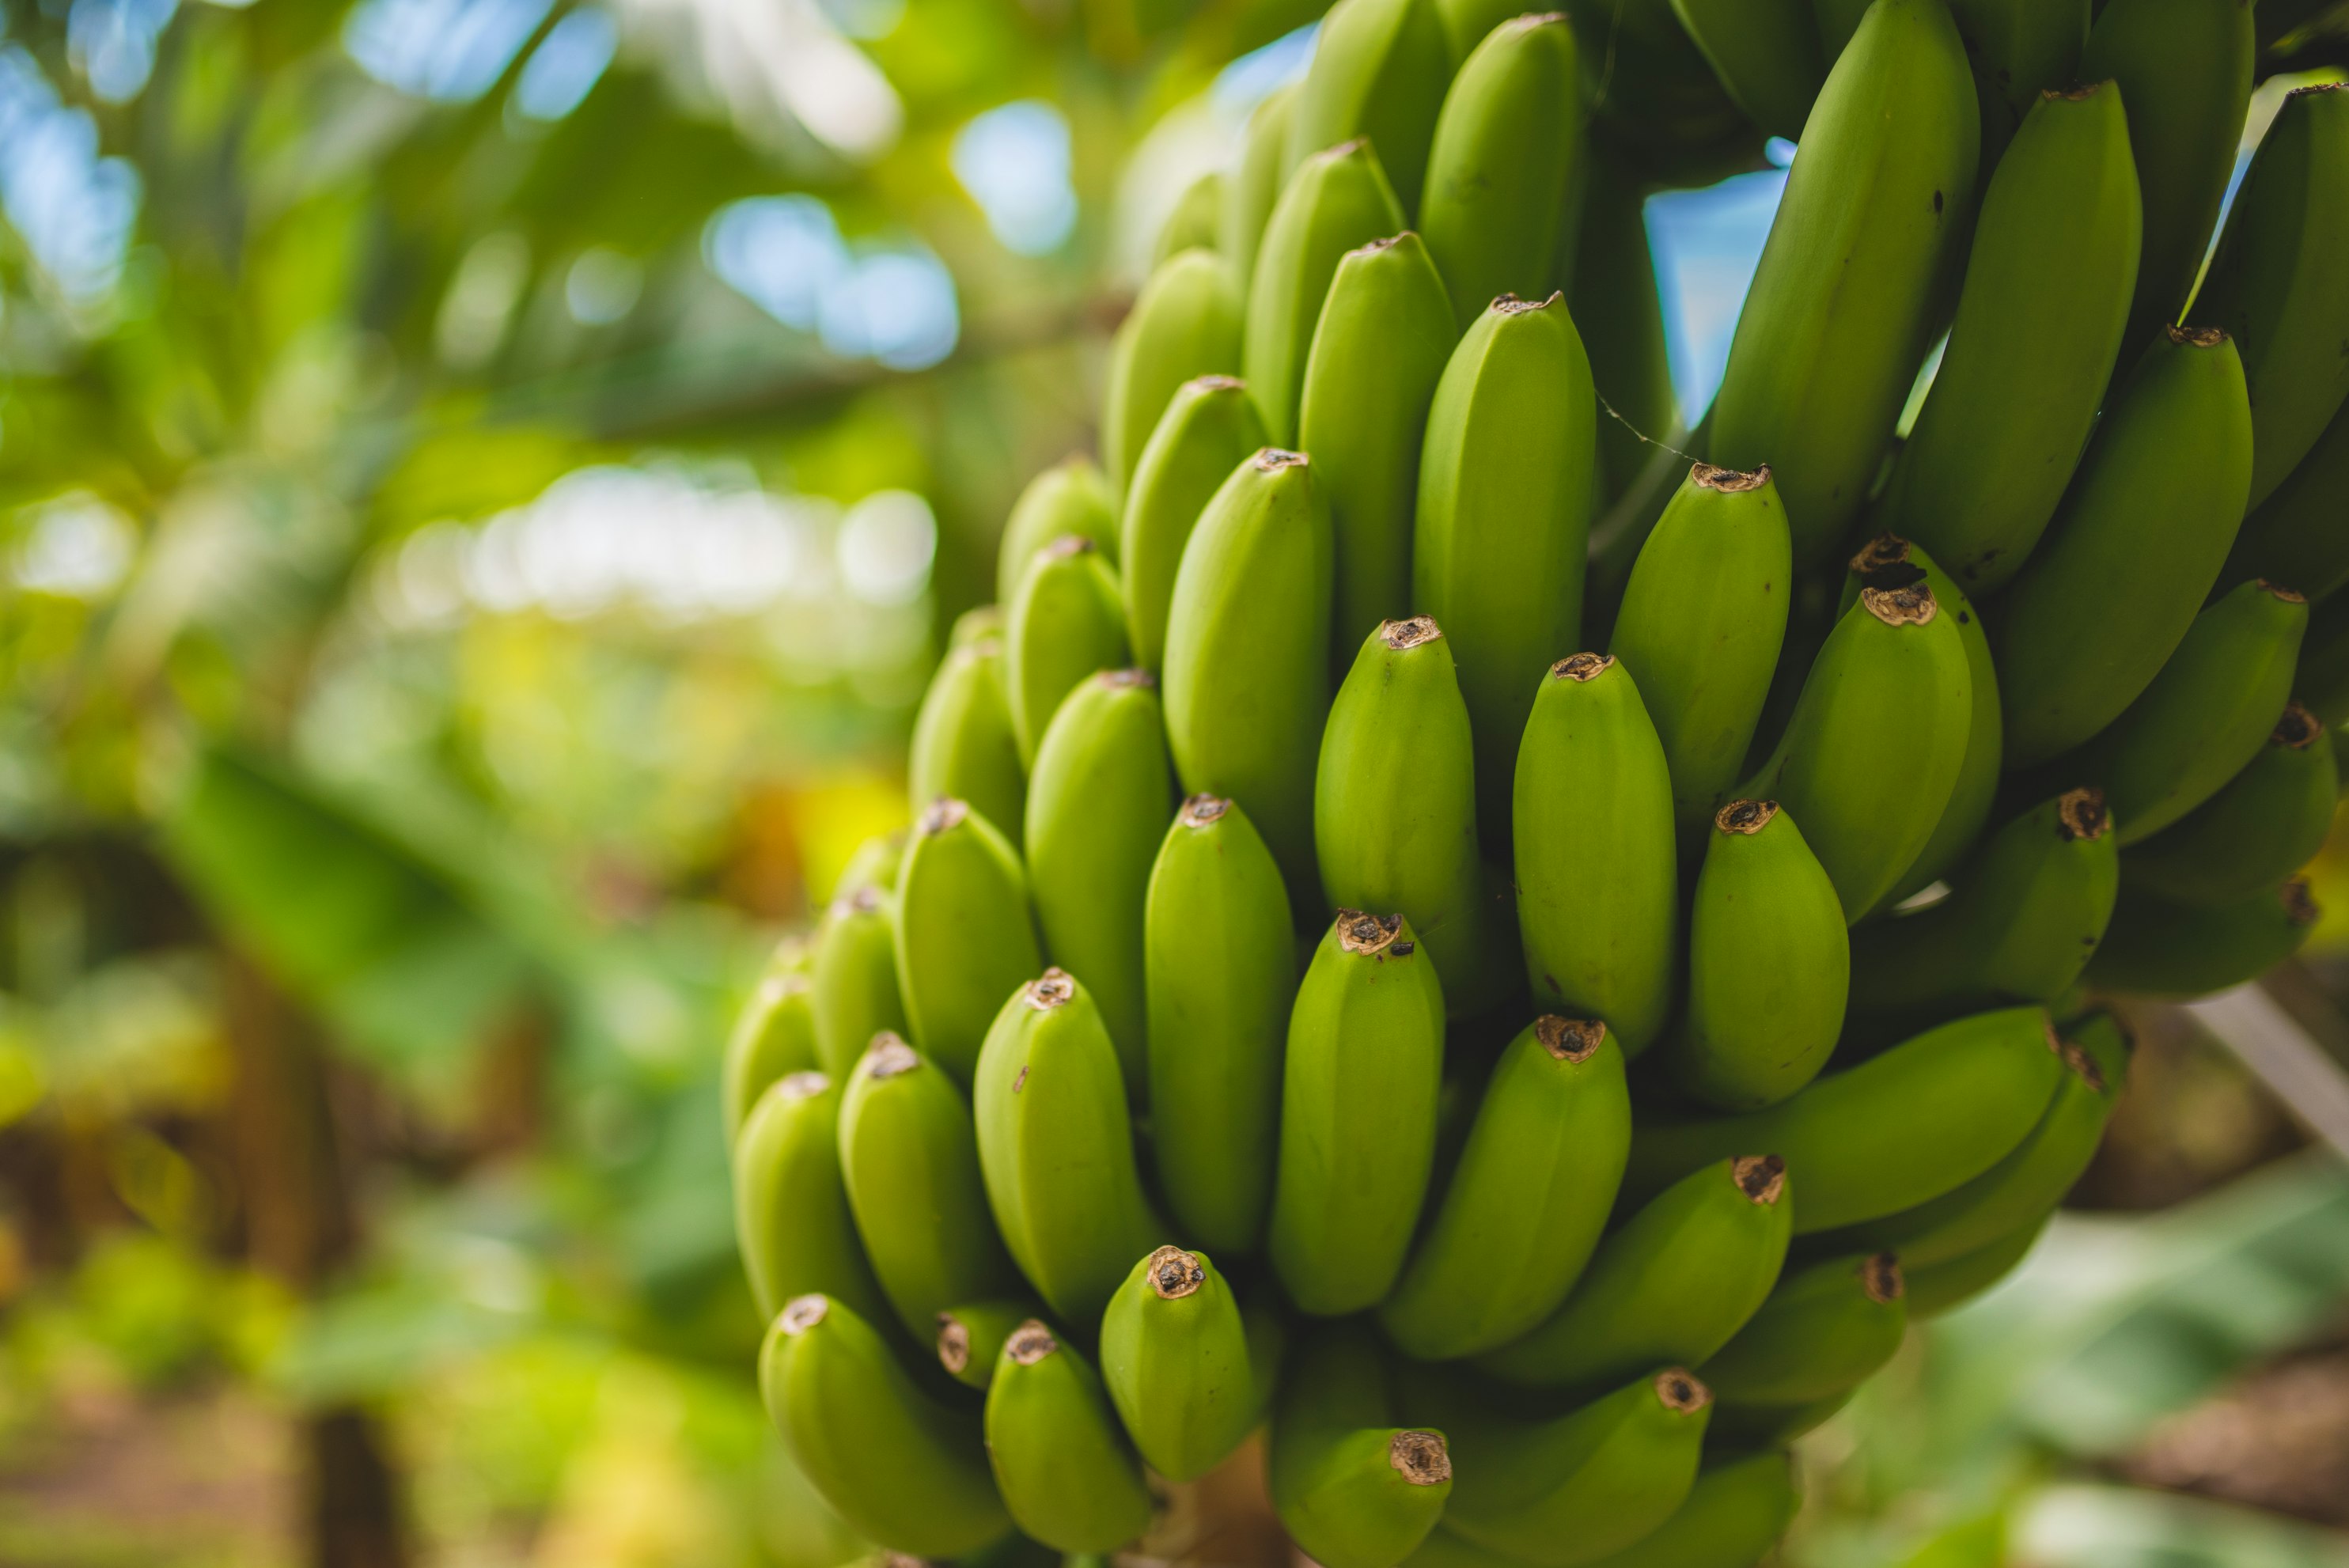 בננה - מדריך גידול, שימושים ויתרונות בריאותיים